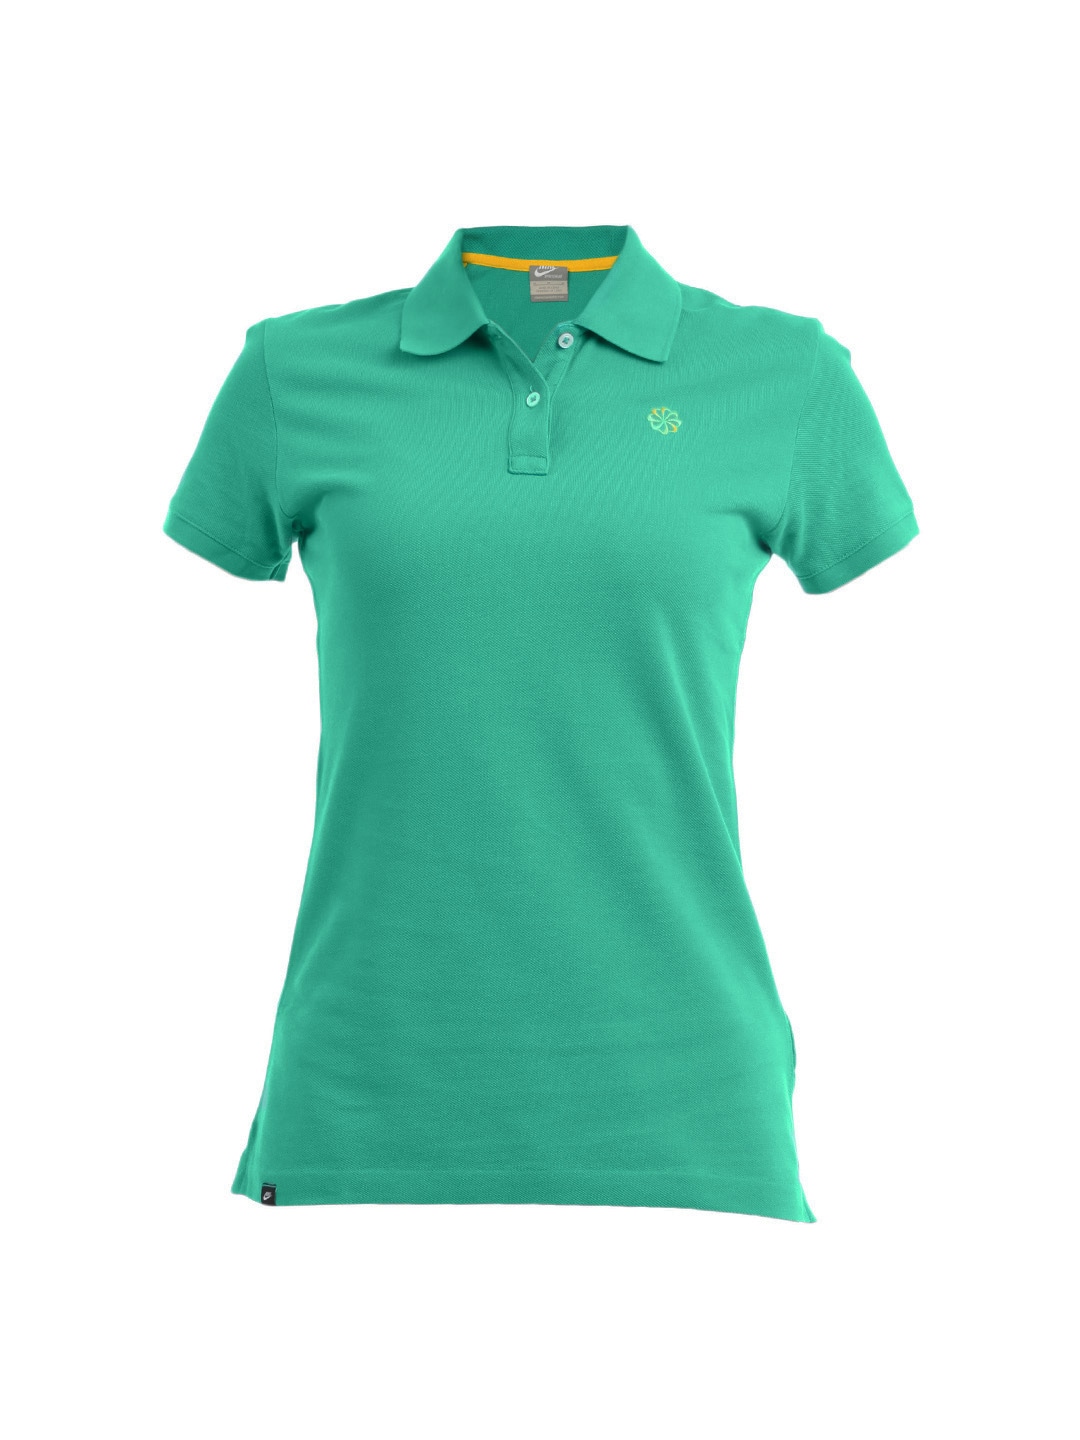 Nike Women Green T-shirt